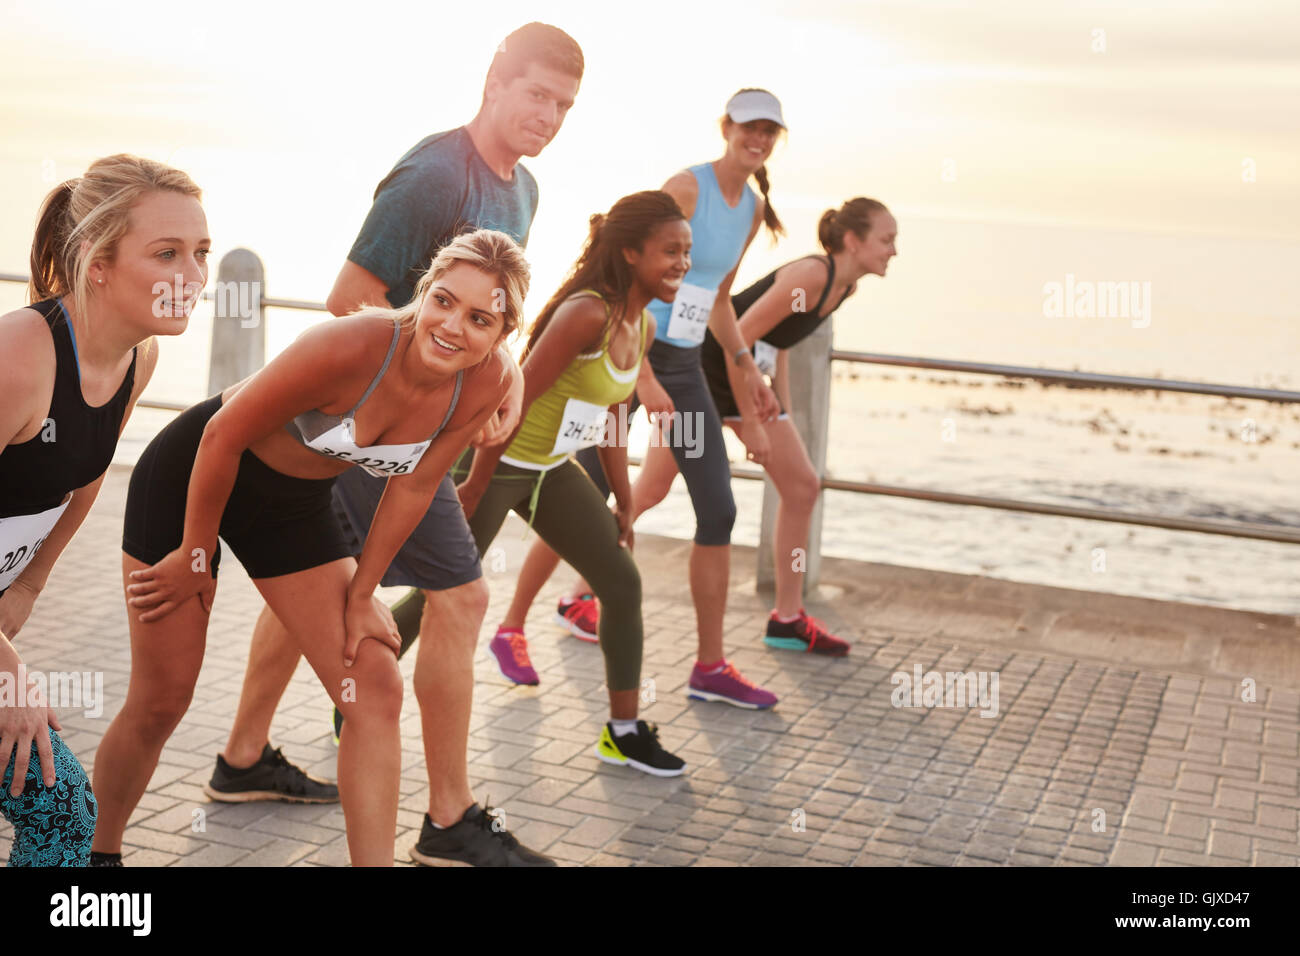 Schuss von Athleten am Start eines Marathons. Heterogene Gruppe von Menschen zusammen direkt an Strandpromenade laufen. Stockfoto